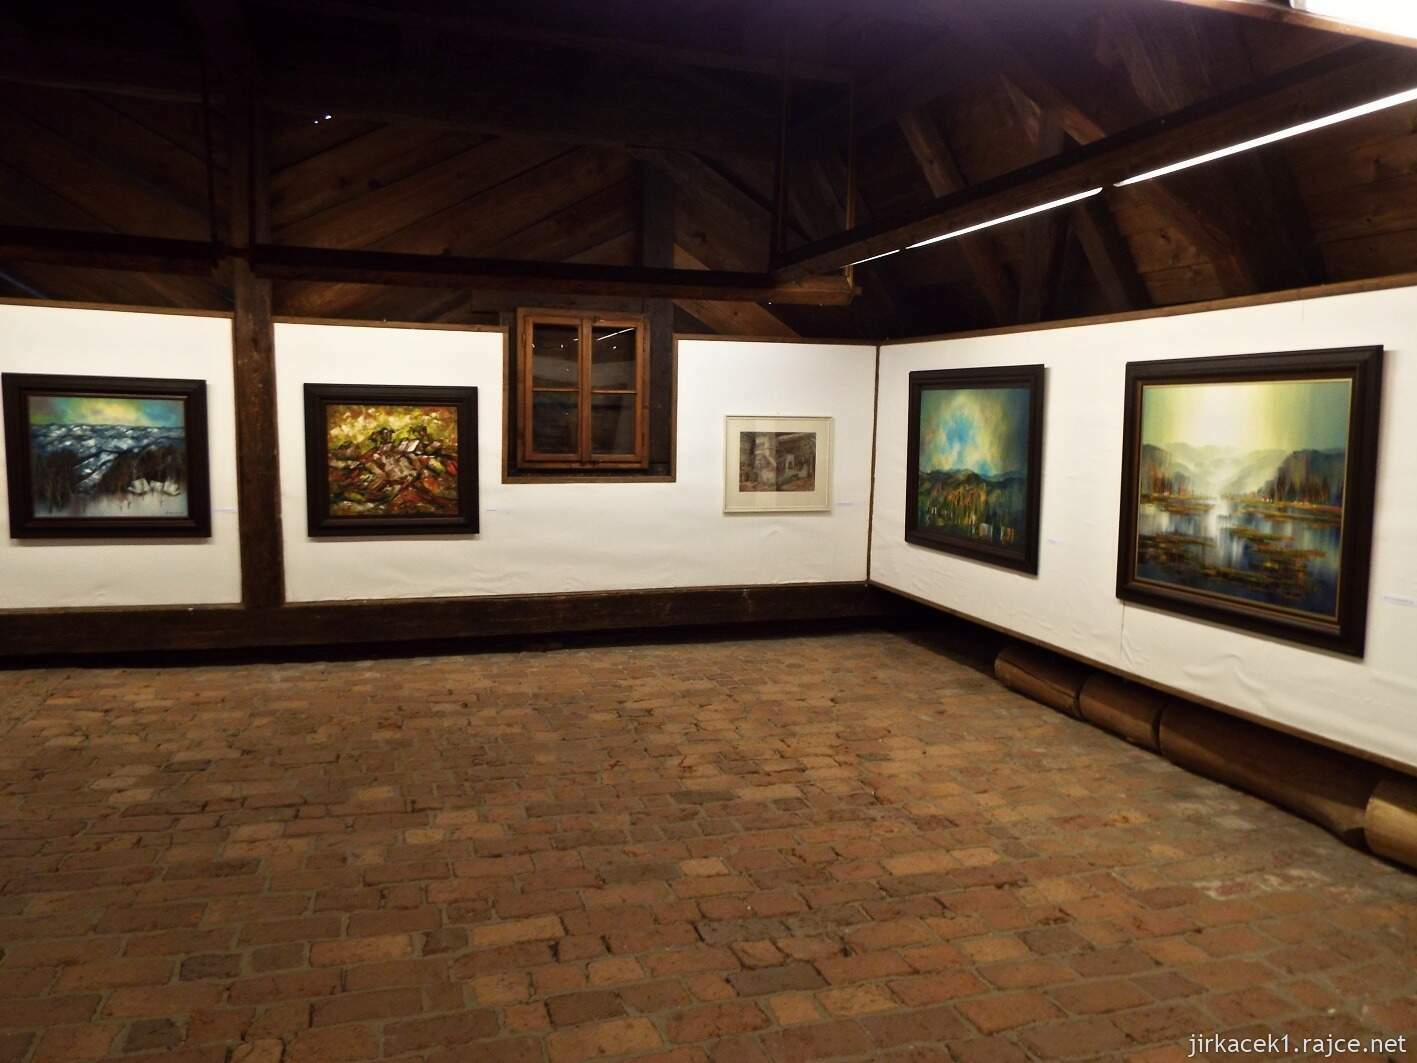 022 - Velké Karlovice - muzeum 48 - výstava obrazů na půdě